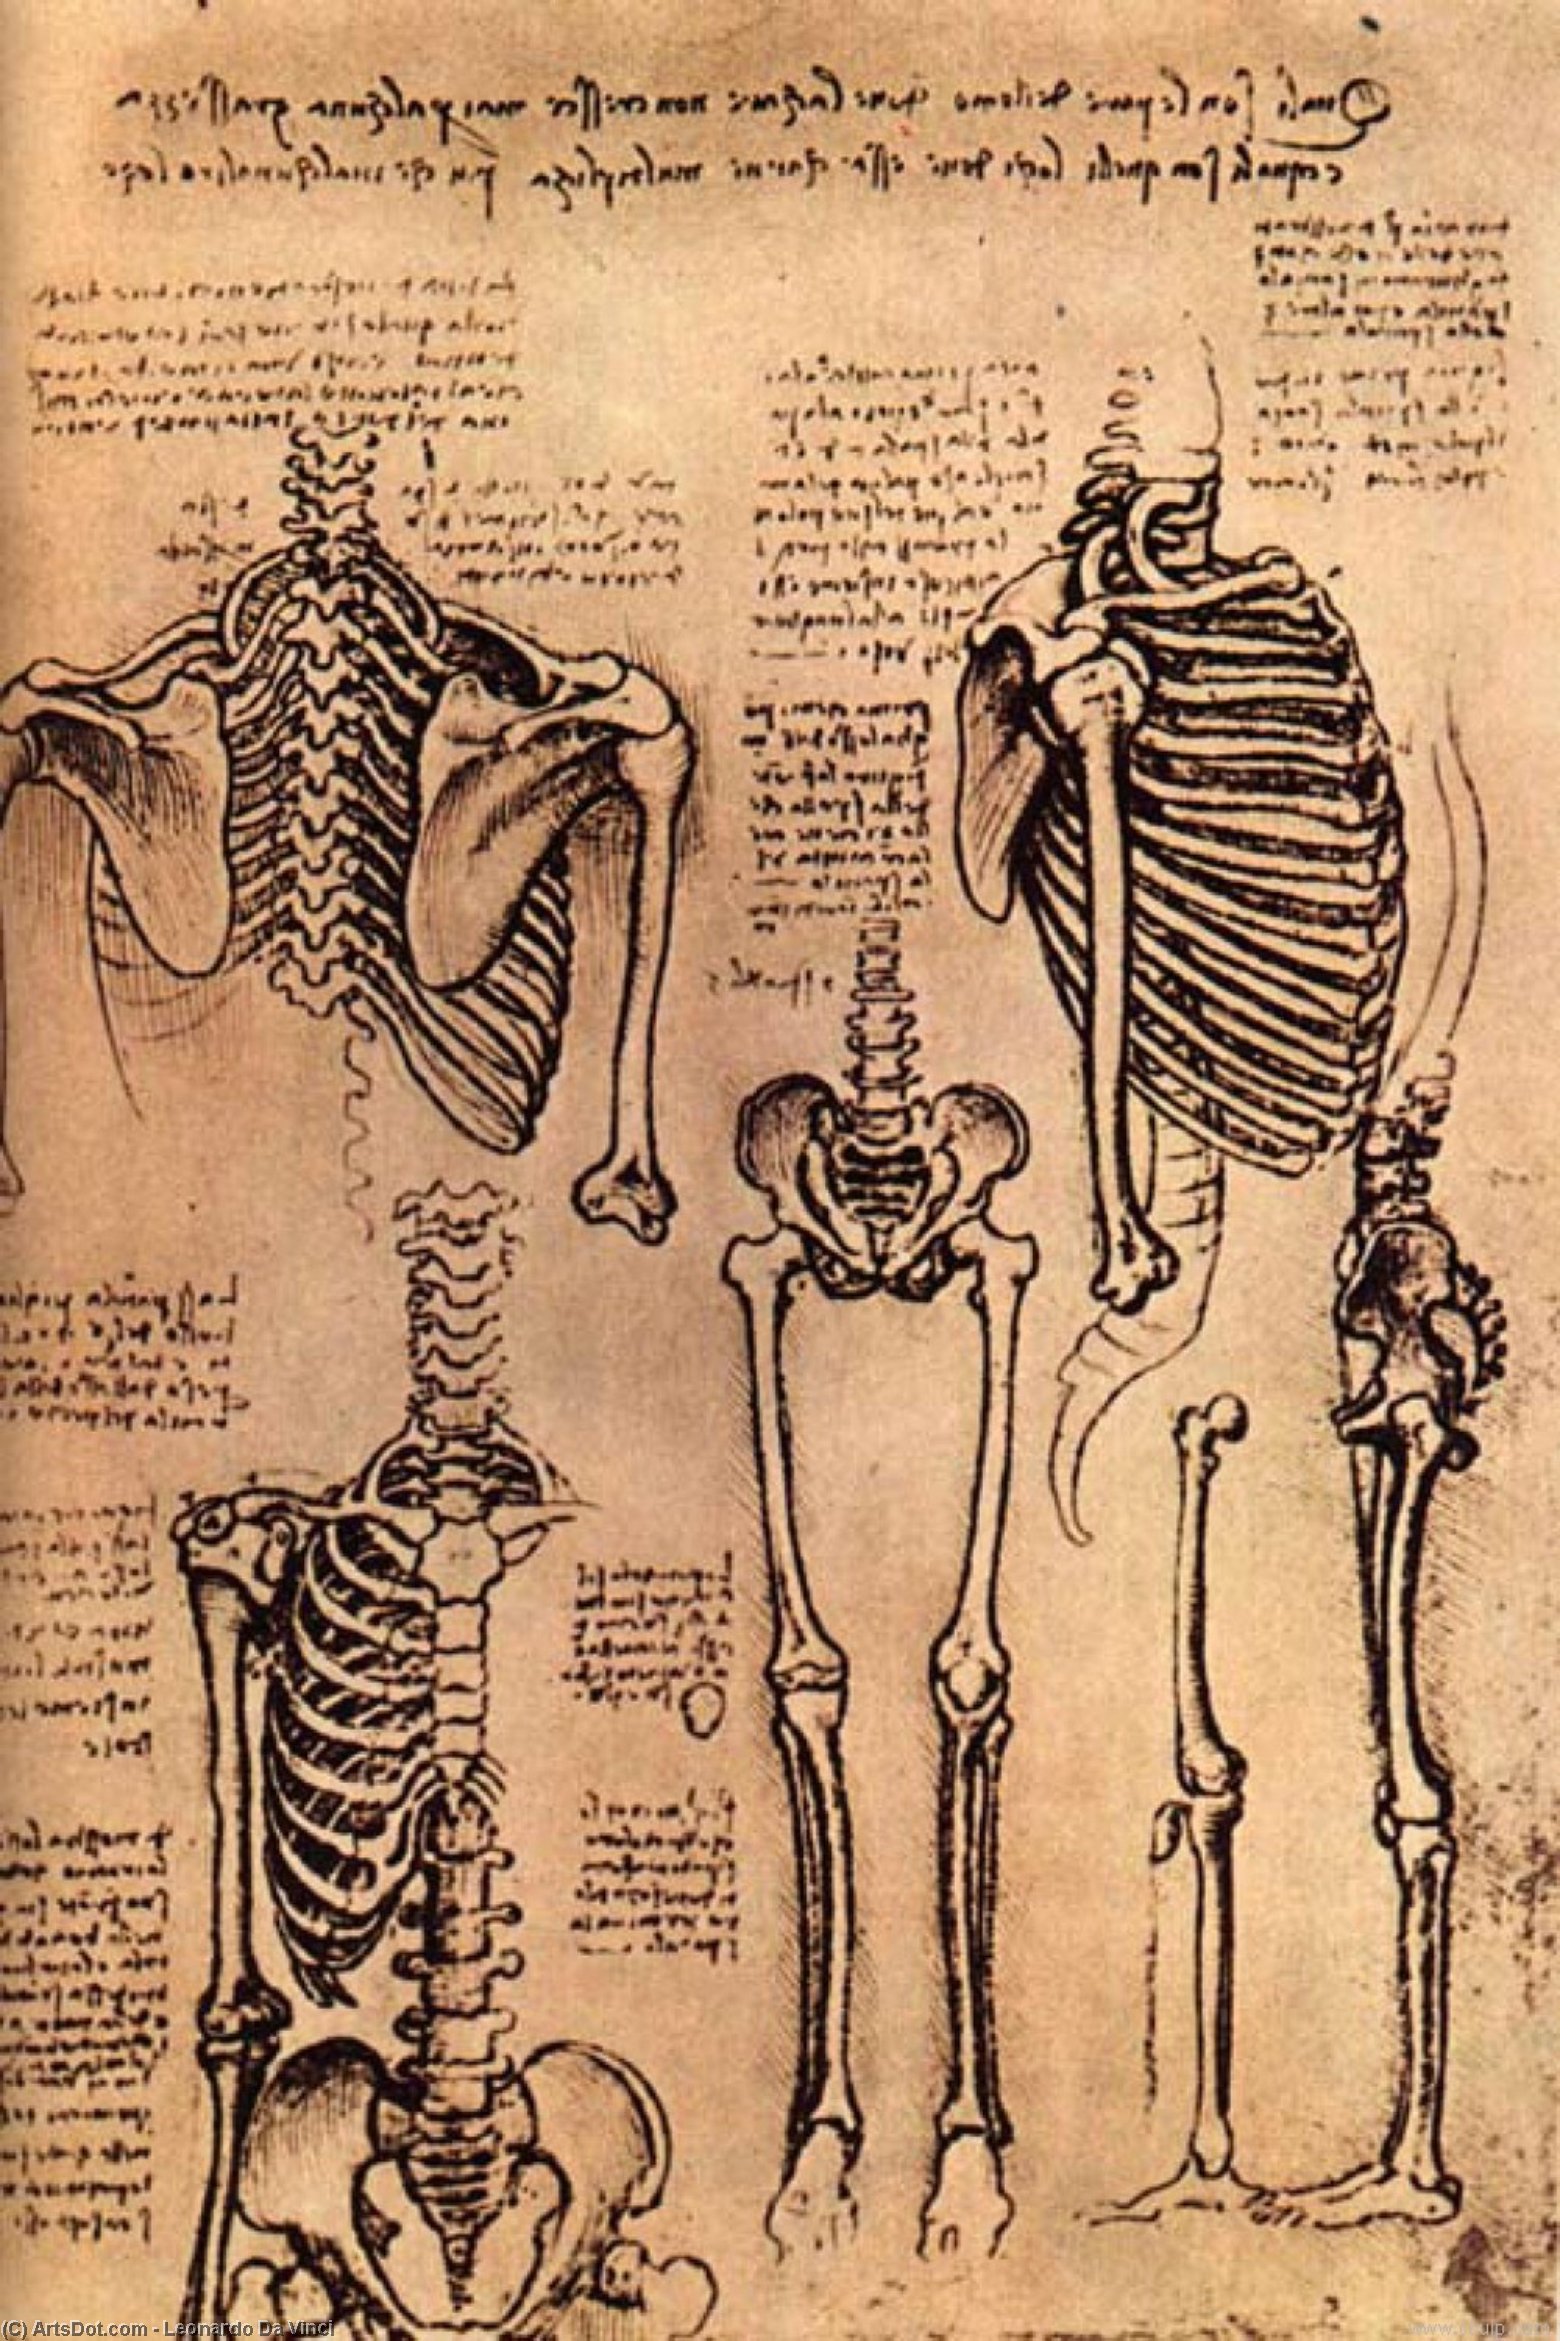 Compra Riproduzioni D'arte Del Museo Disegno del Torso e delle braccia di Leonardo Da Vinci (1452-1519, Italy) | ArtsDot.com